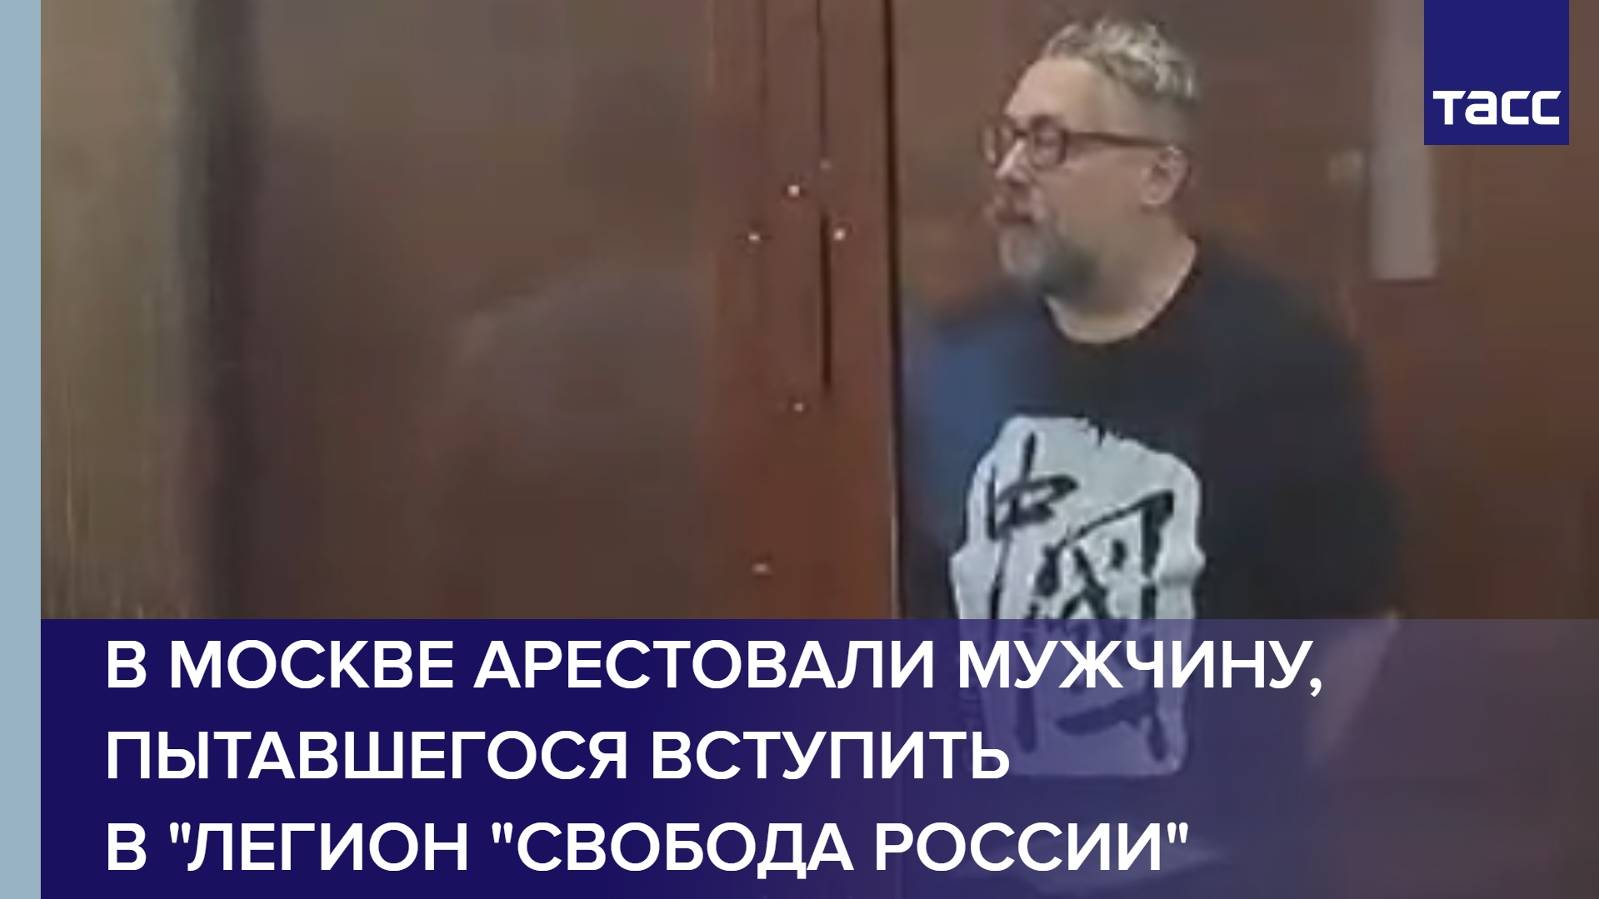 В Москве арестовали мужчину, пытавшегося вступить в "Легион "Свобода России"